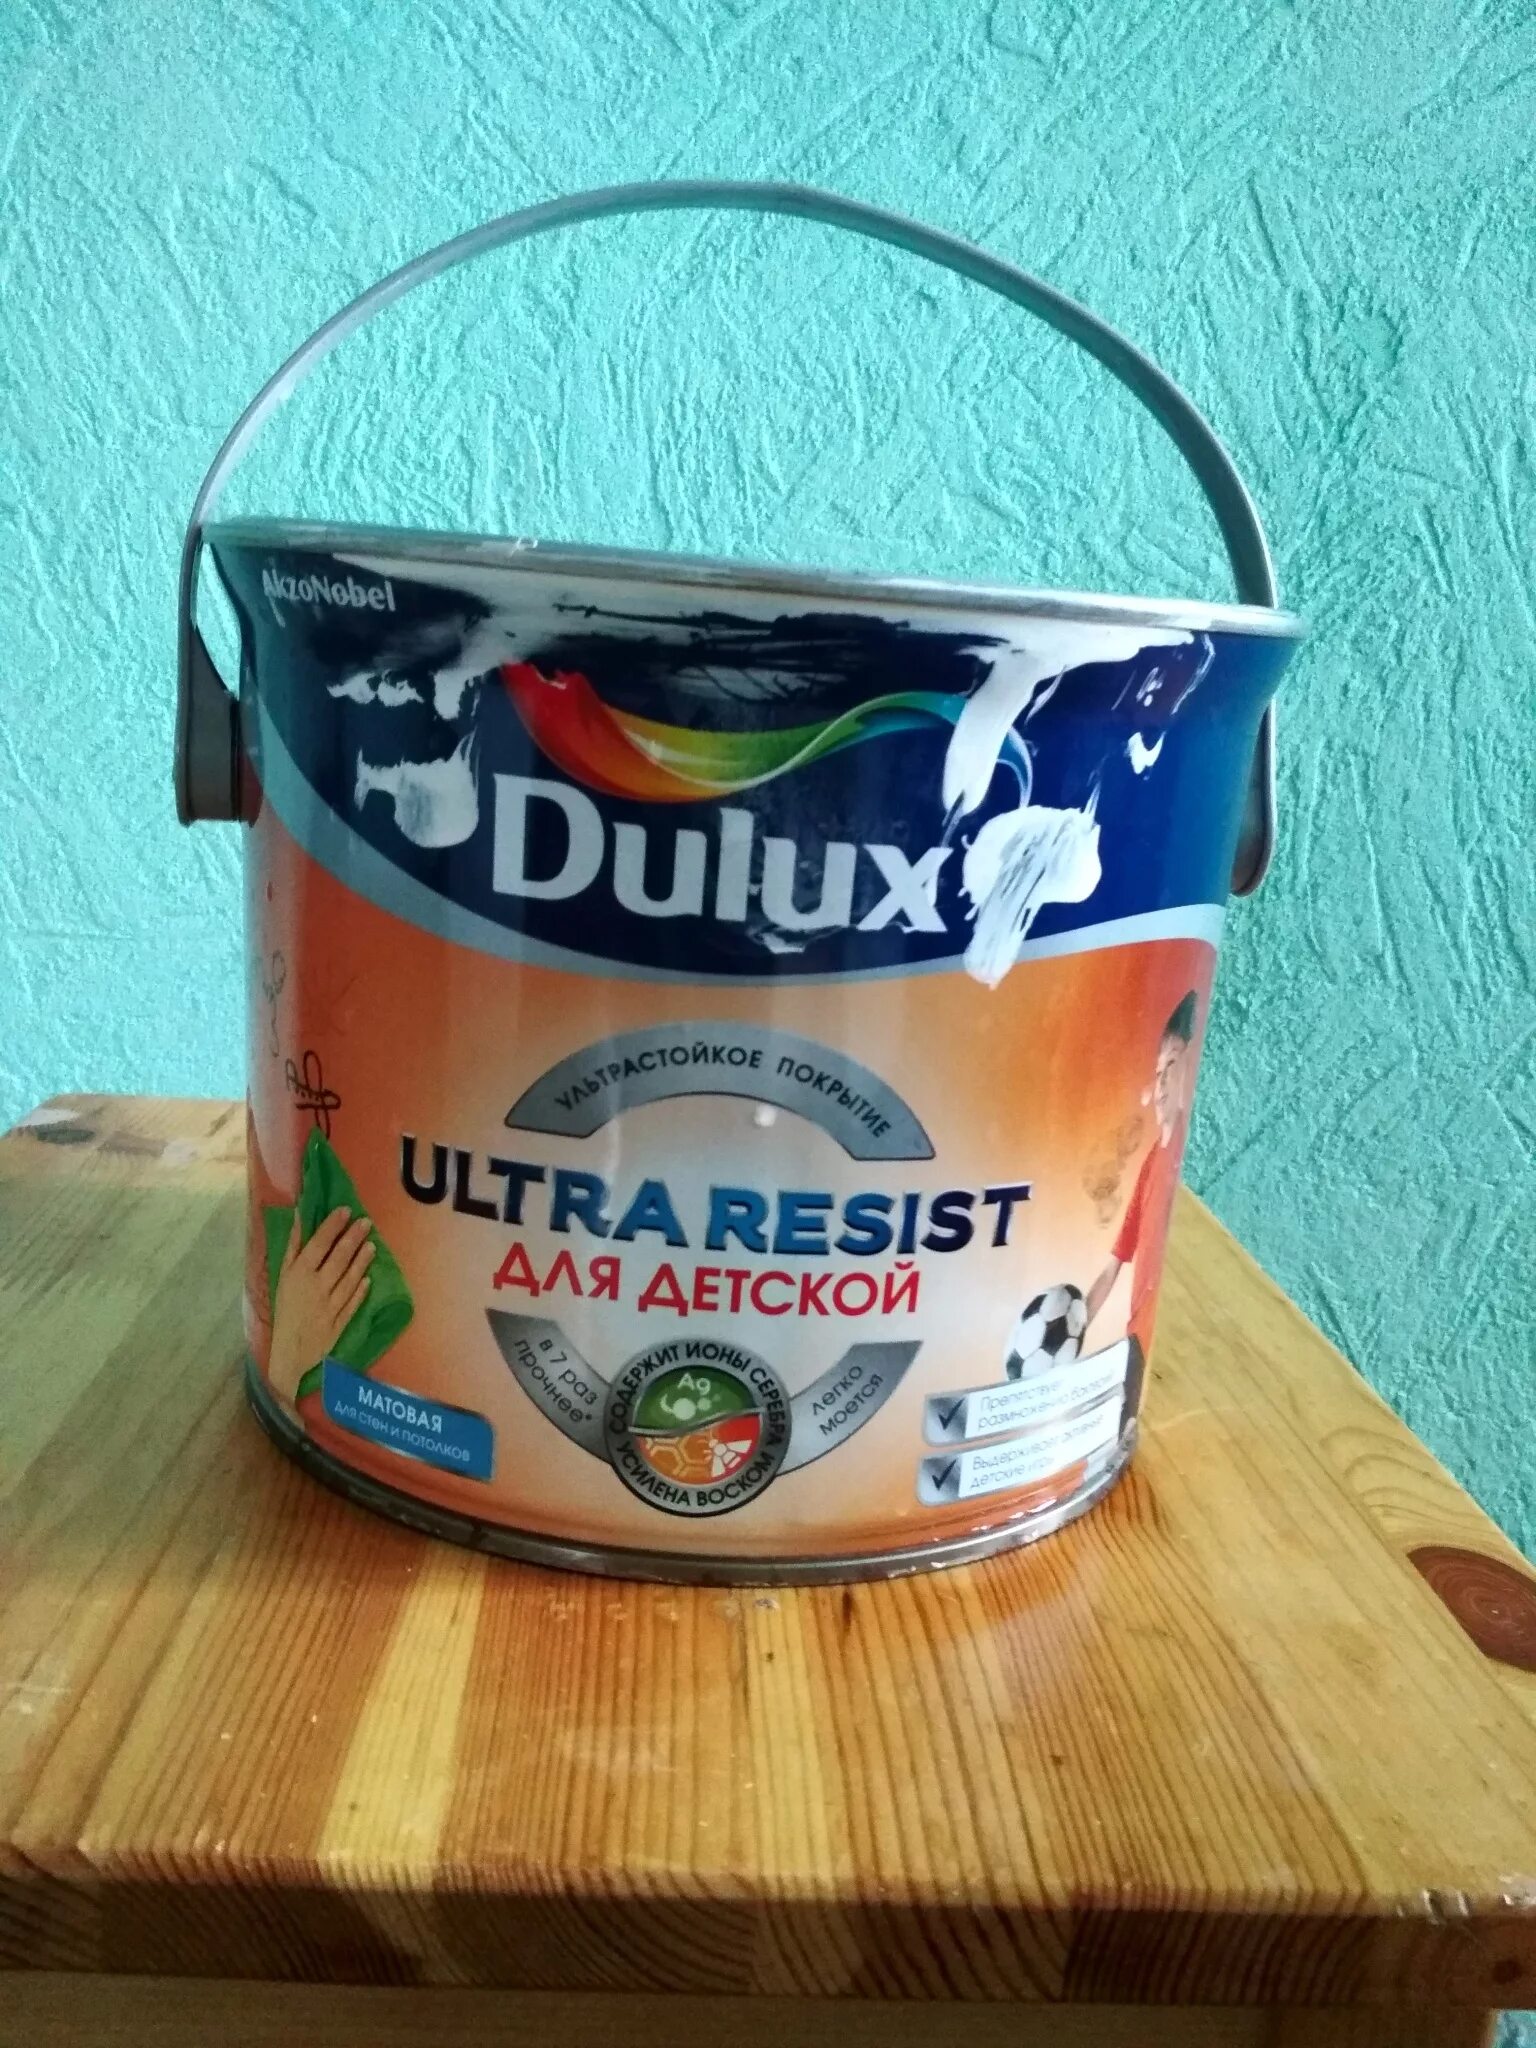 Ультра резист. Dulux Classic Colour база BW 2.5 Л. Dulux Ultra resist. Краска Dulux Ultra resist для детской. Dulux Ultra resist колер.